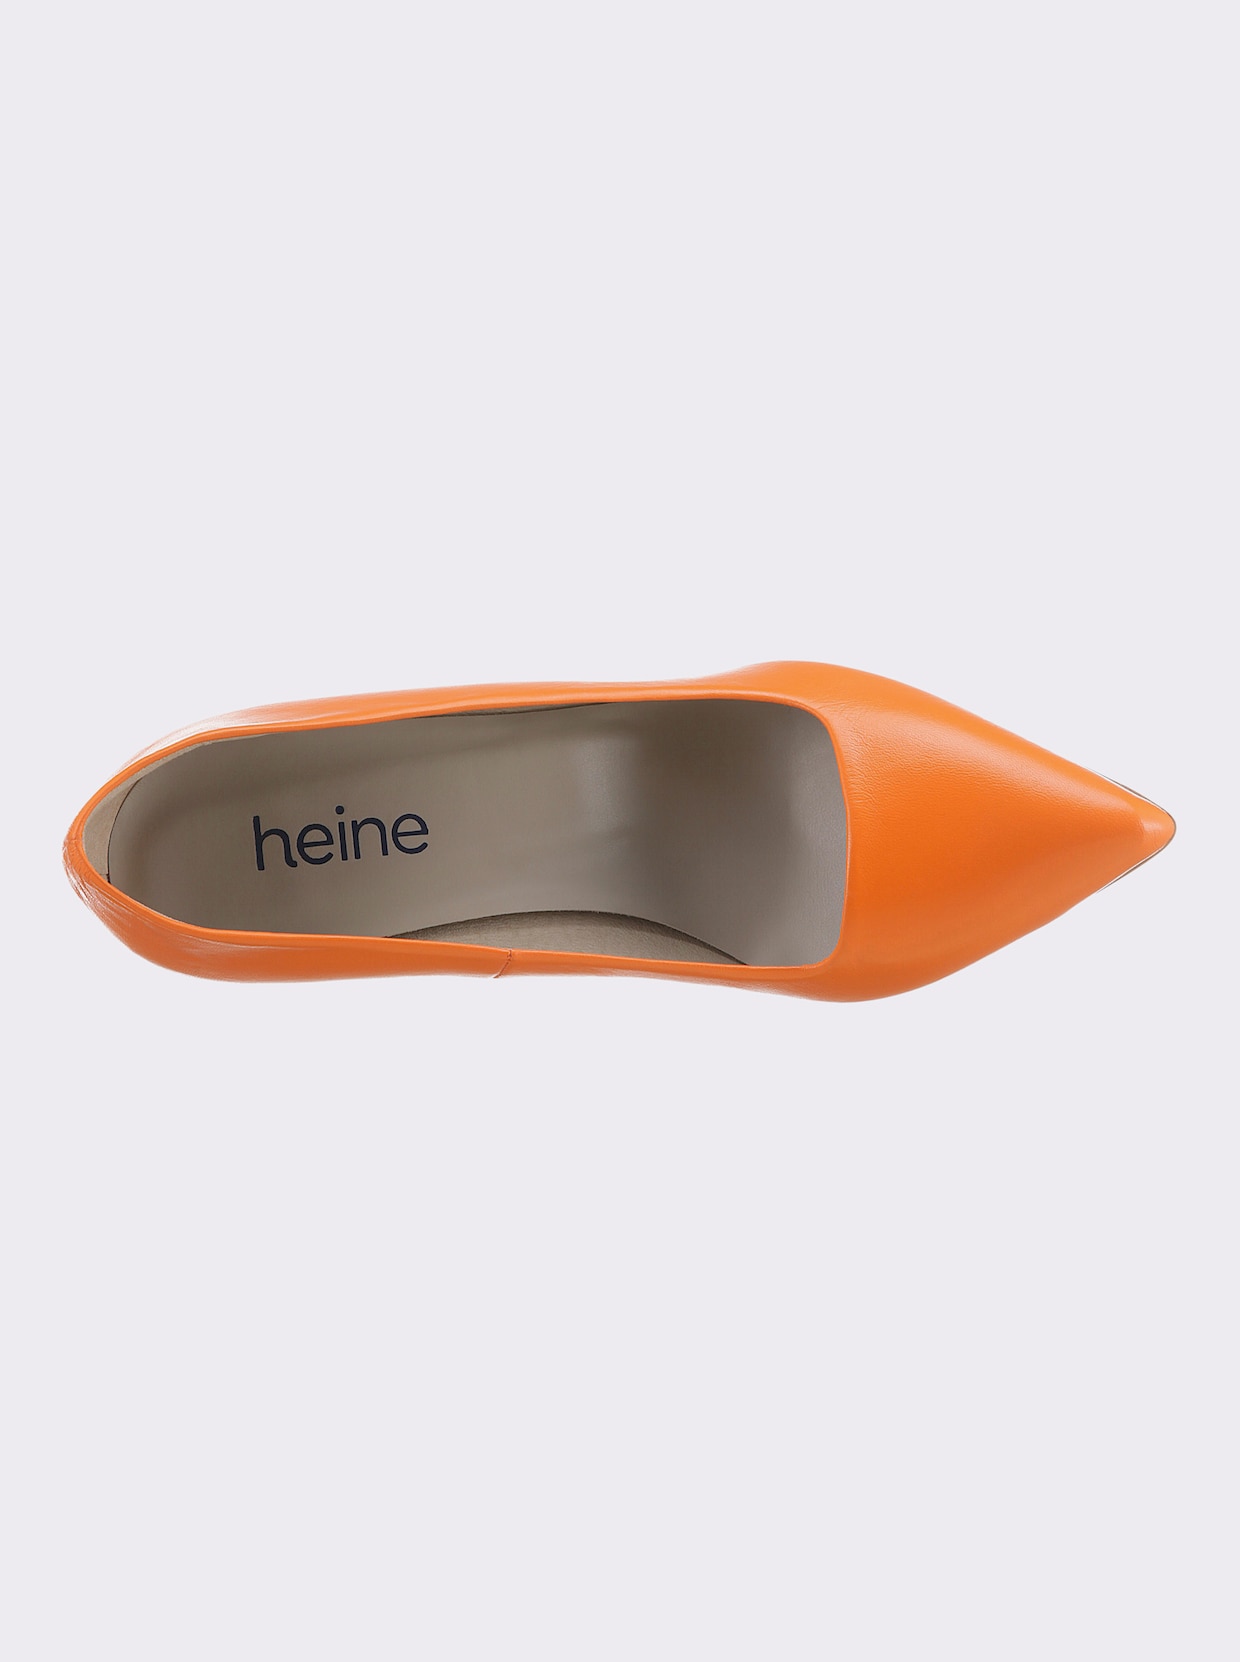 heine pumps - oranje